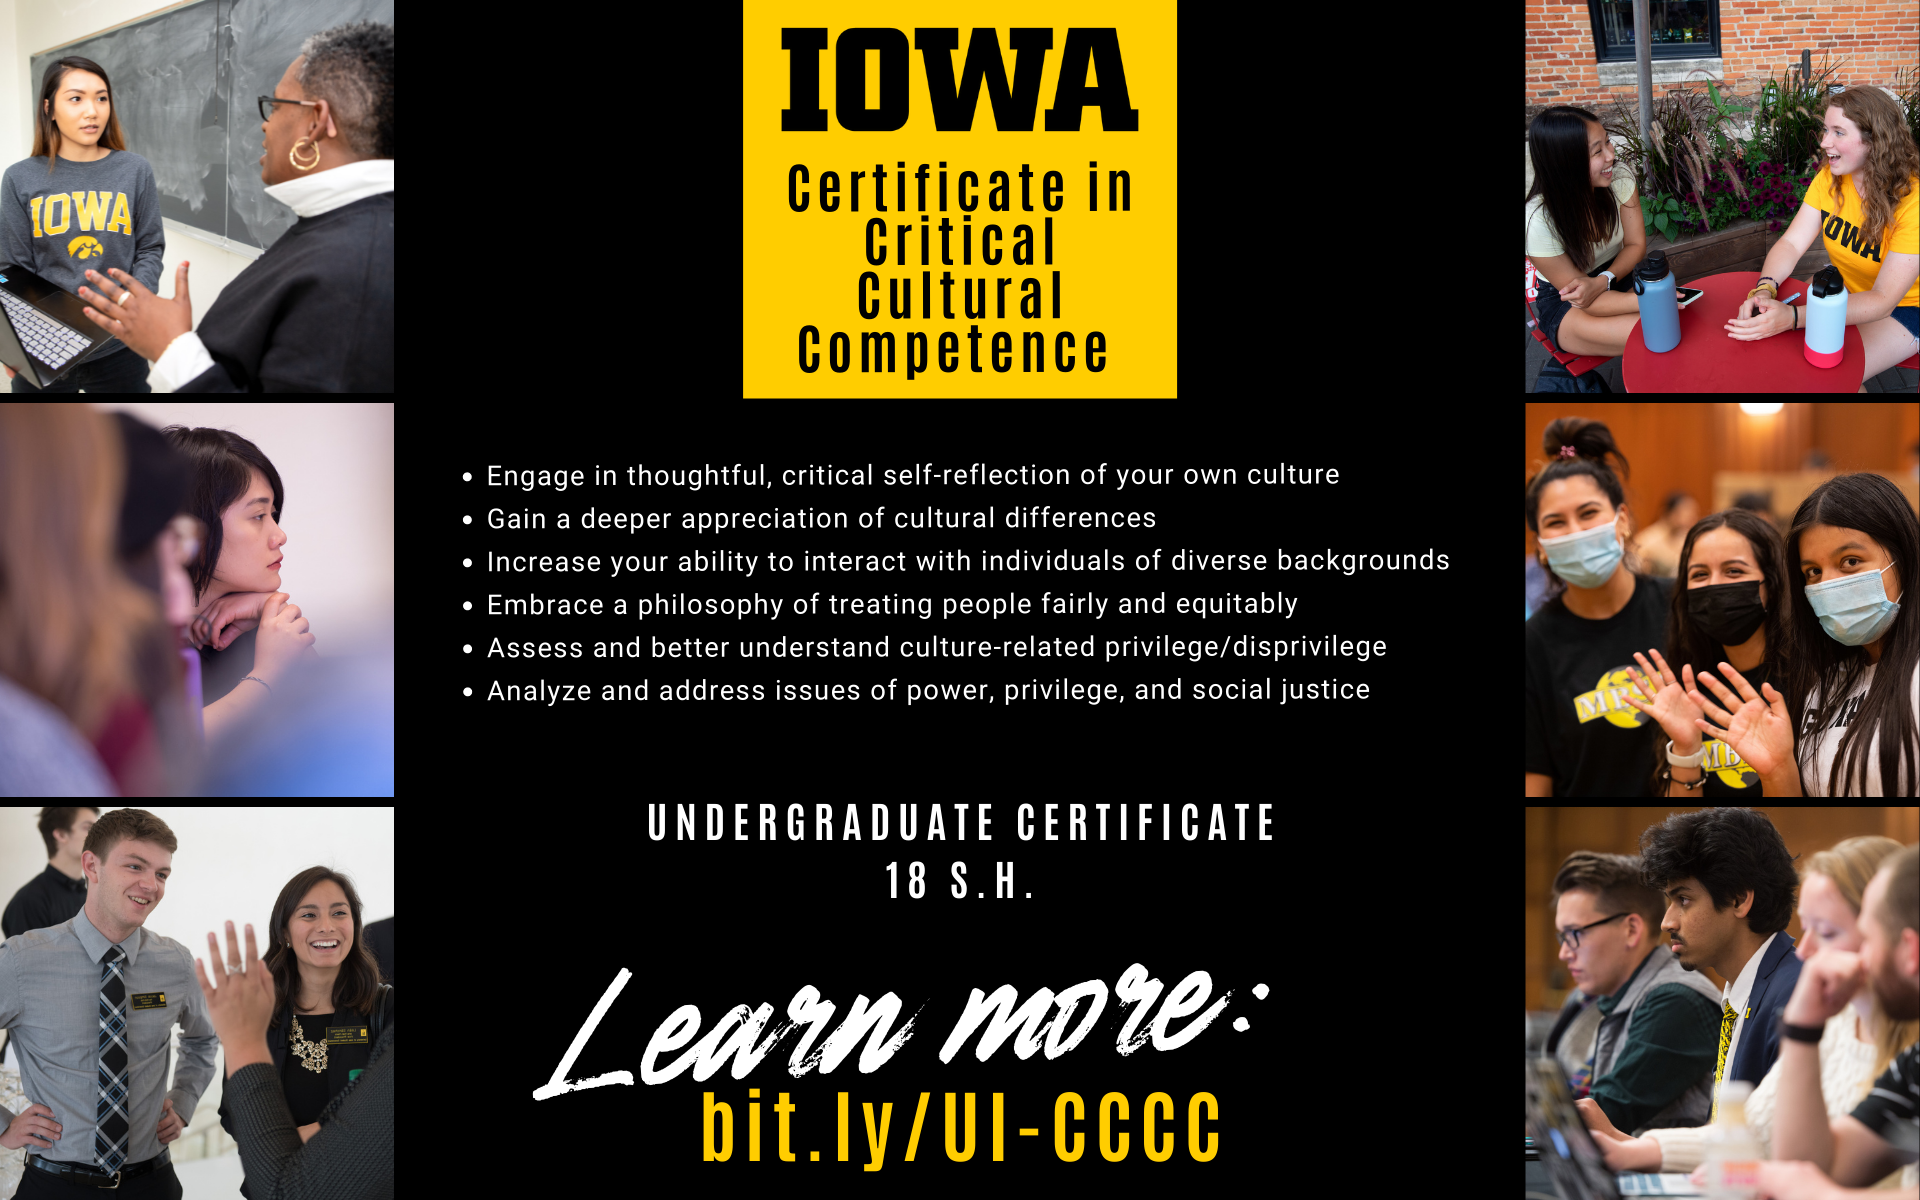 certificate in critical cultural competence bit.ly/UI-CCCC